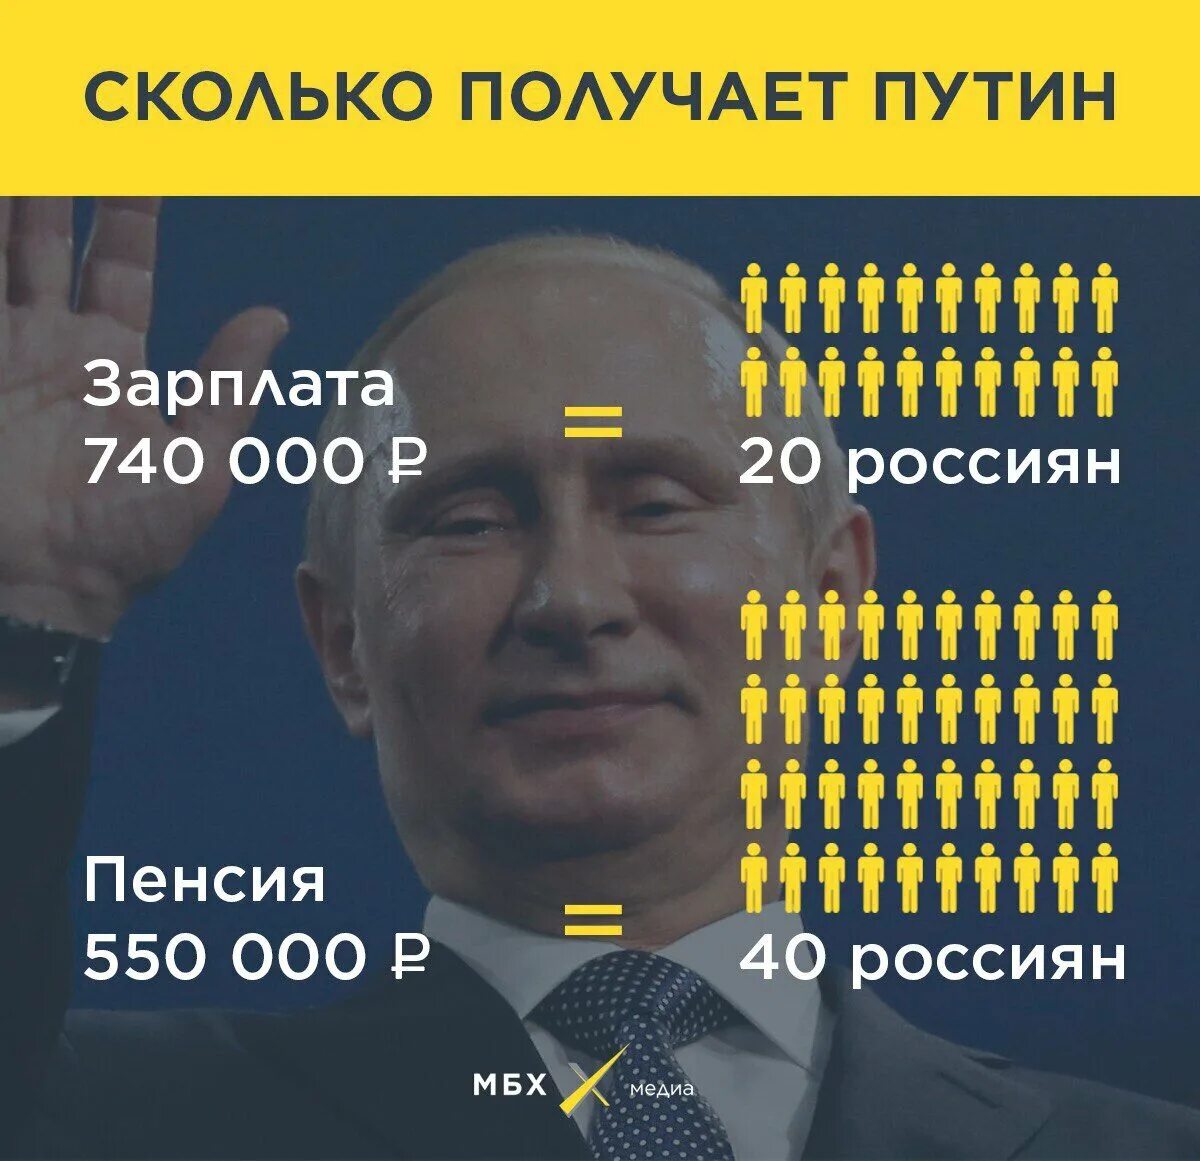 Сколько заработал на концерте. Зарплата Путина. Официальная зарплата президента. Сколько зарабатываетпутн.